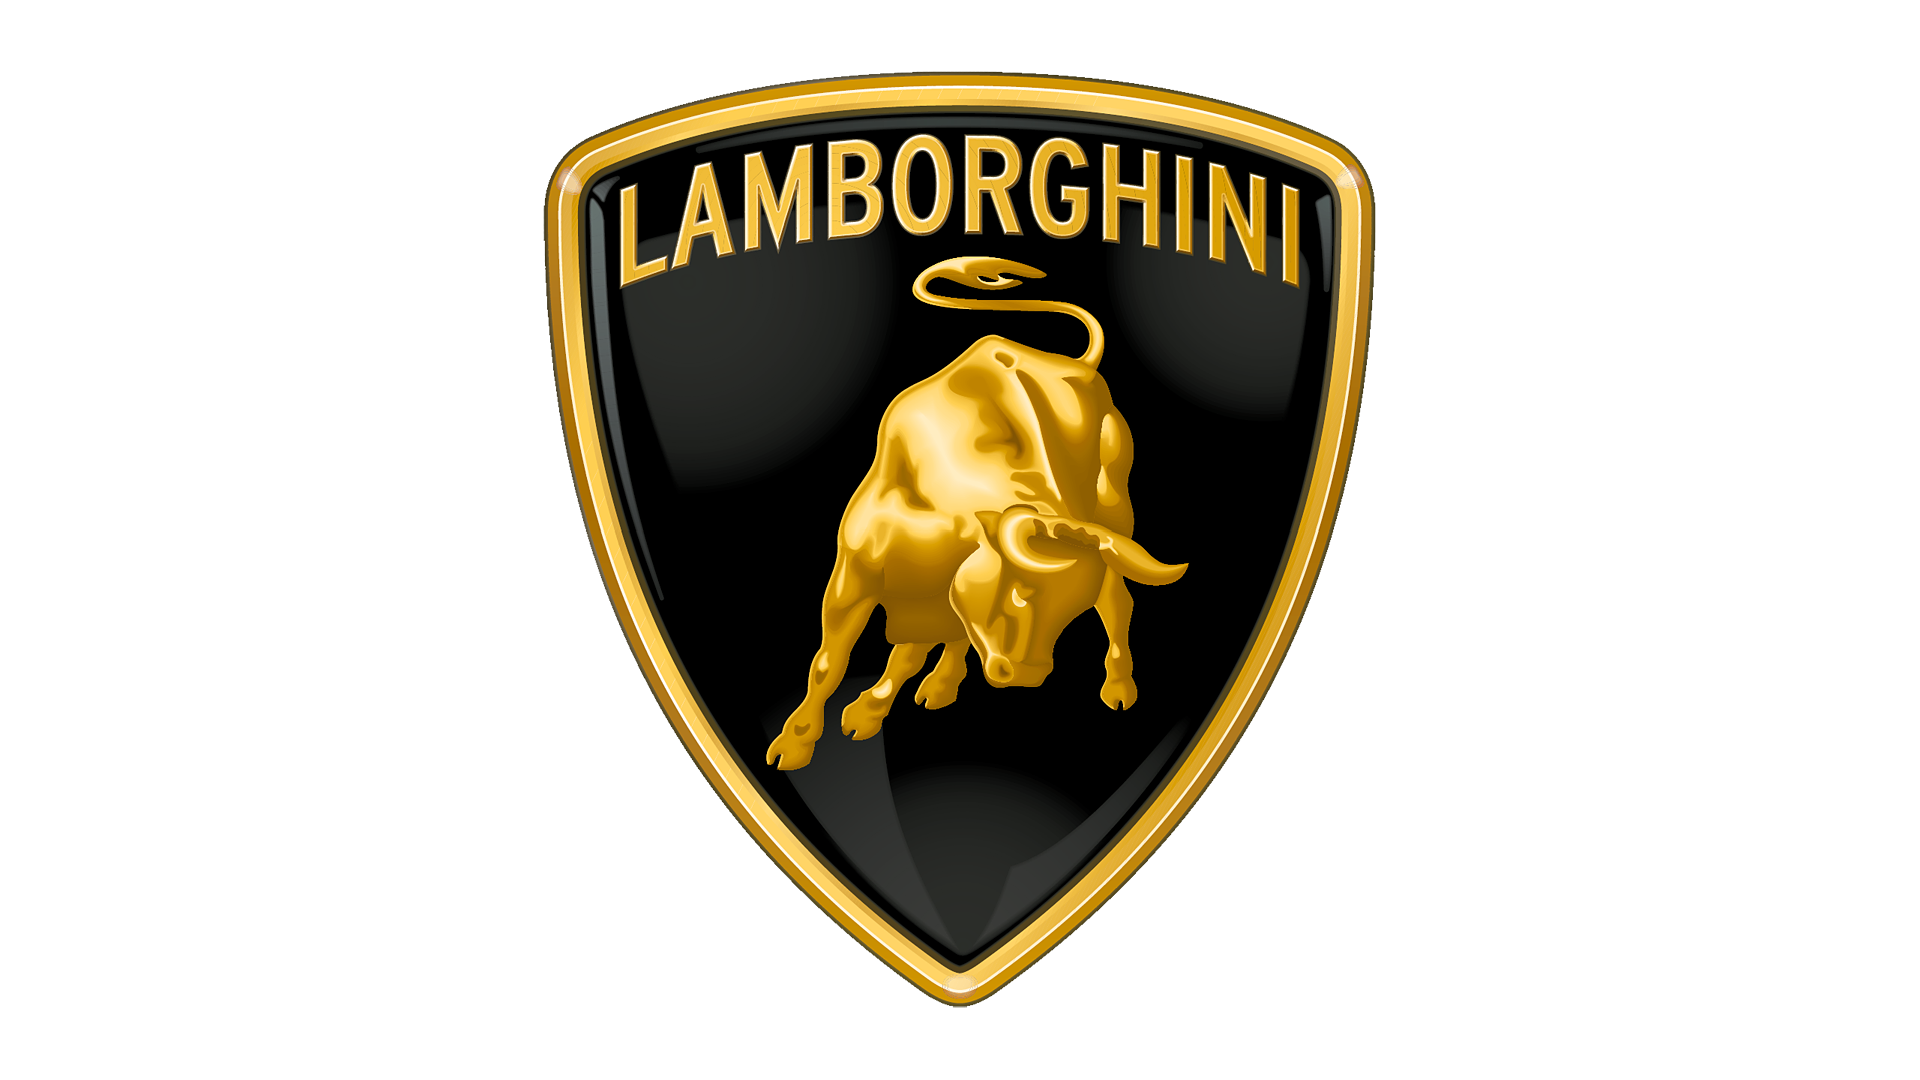 Lamborghini car logo lemon law